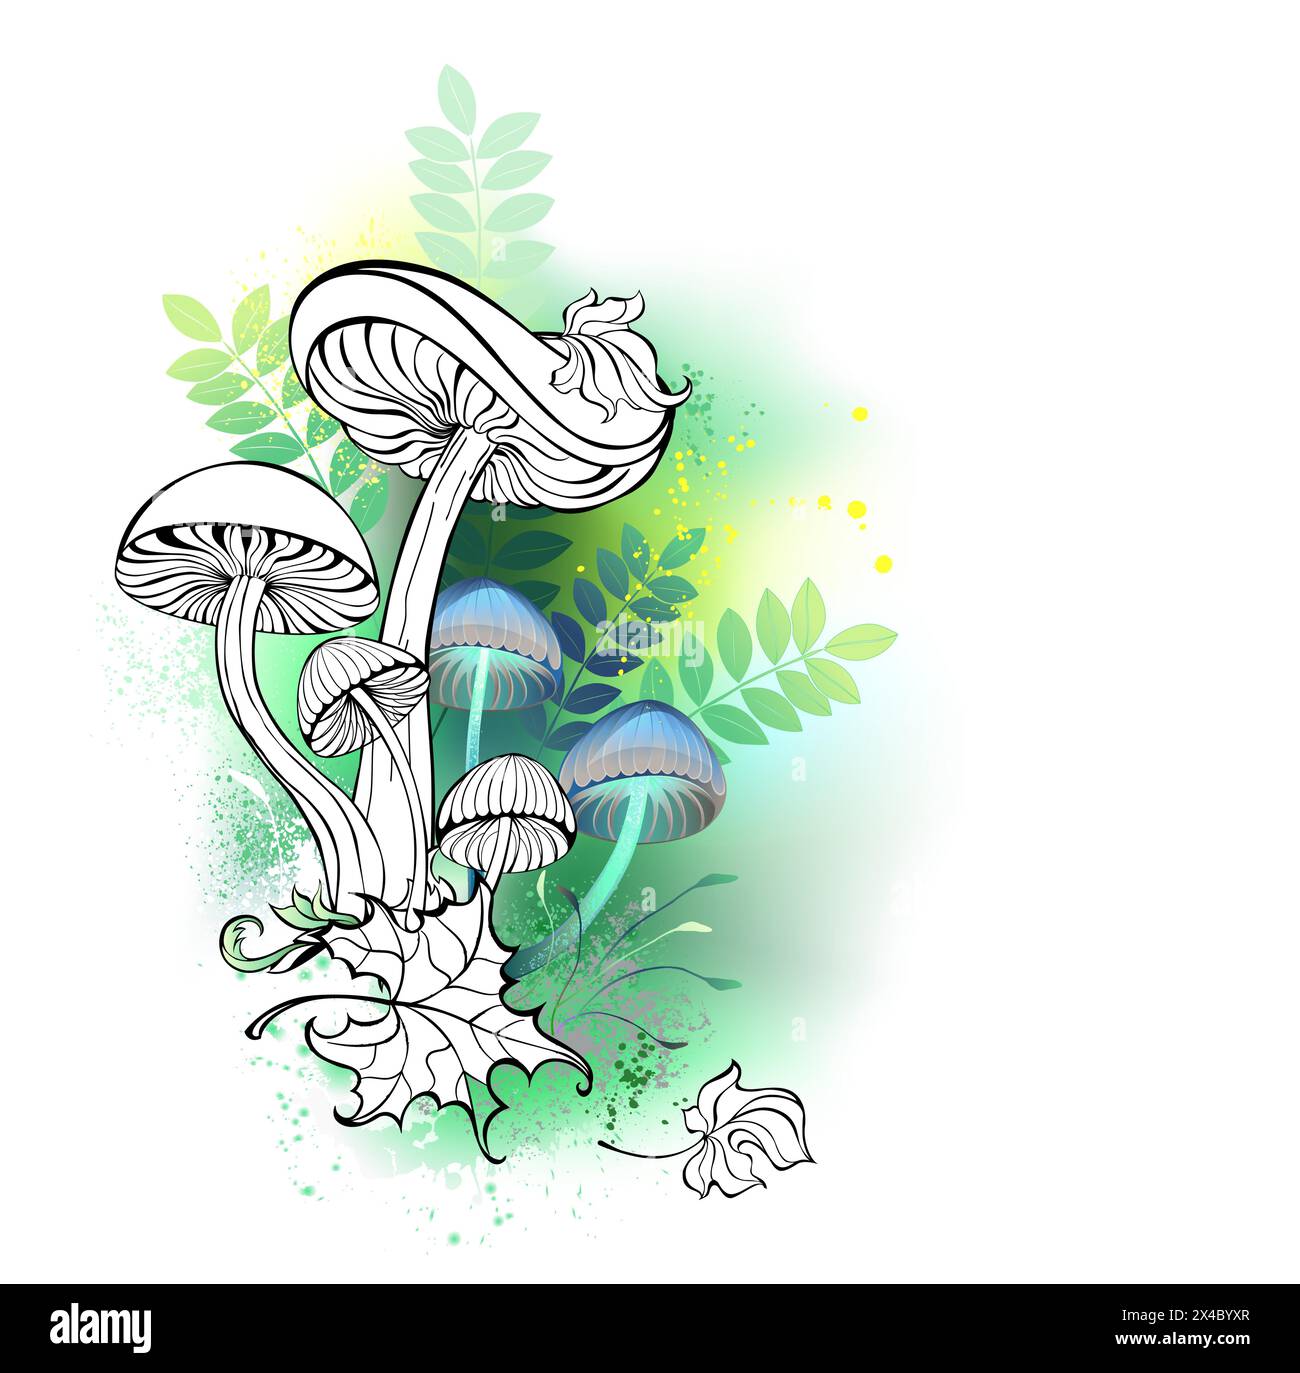 Funghi sagomati artisticamente su sfondo verde, foresta con ramoscelli verdi, sgabelli verdi e muschio. Design naturale. Illustrazione Vettoriale